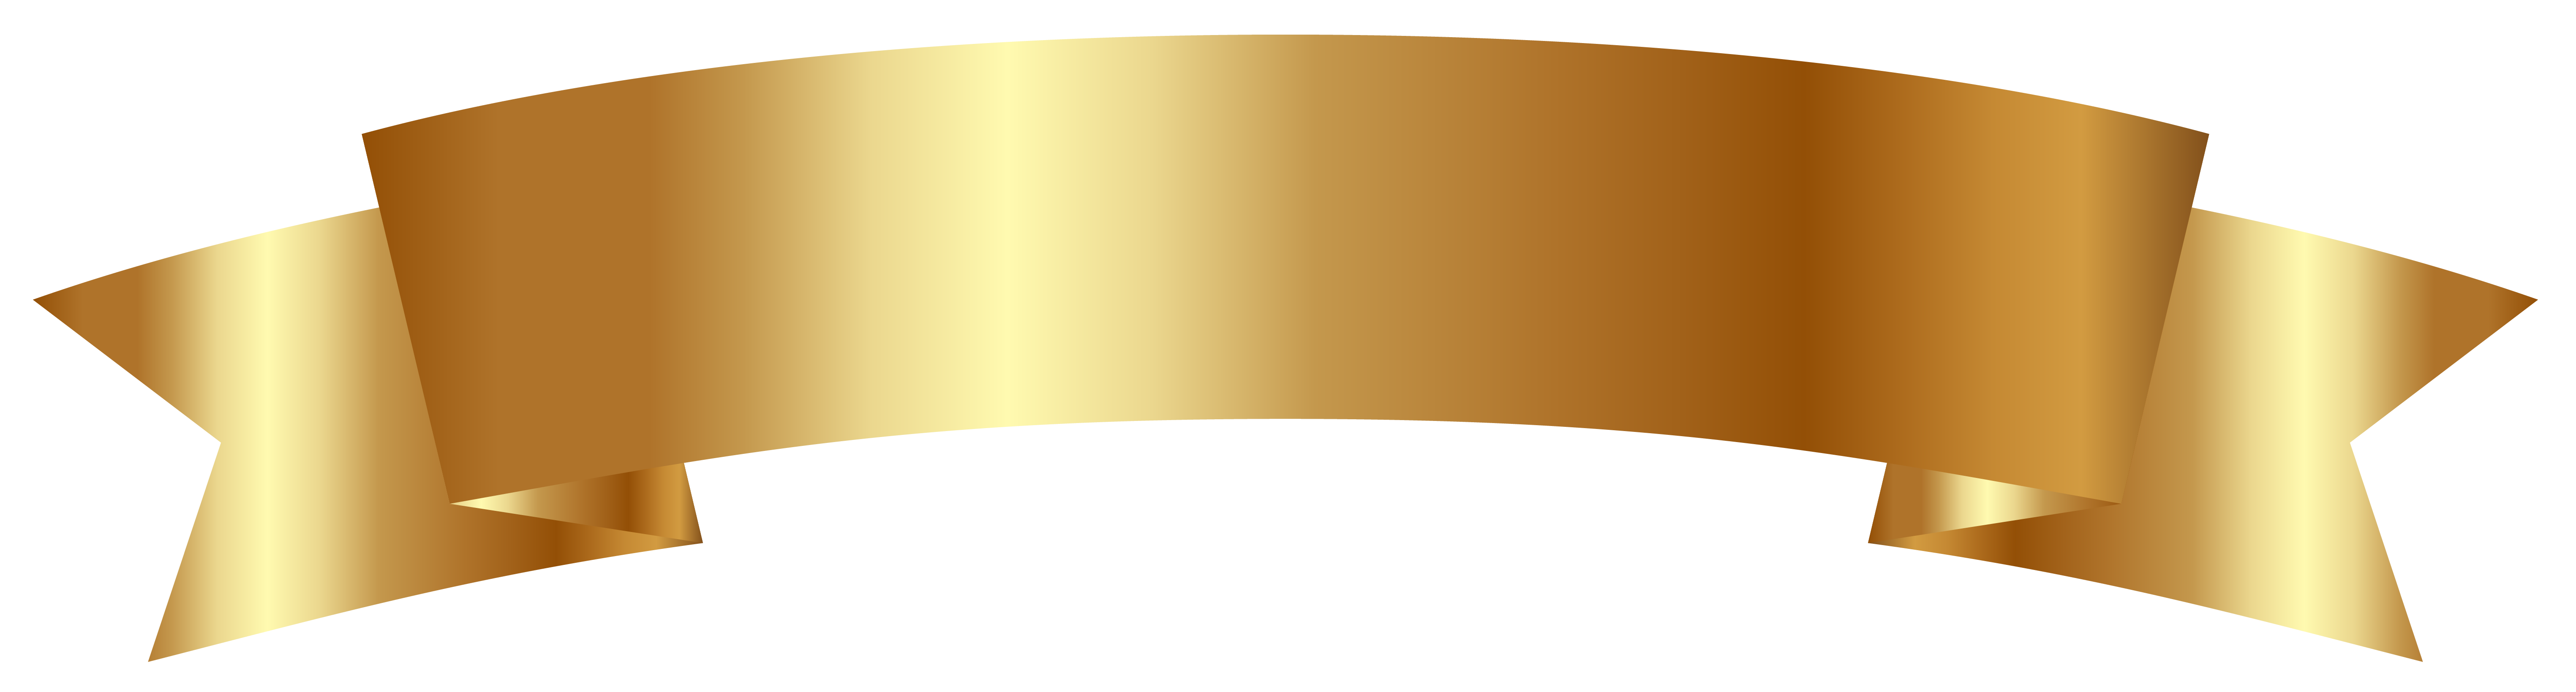 Imagen PNG de la cinta de oro